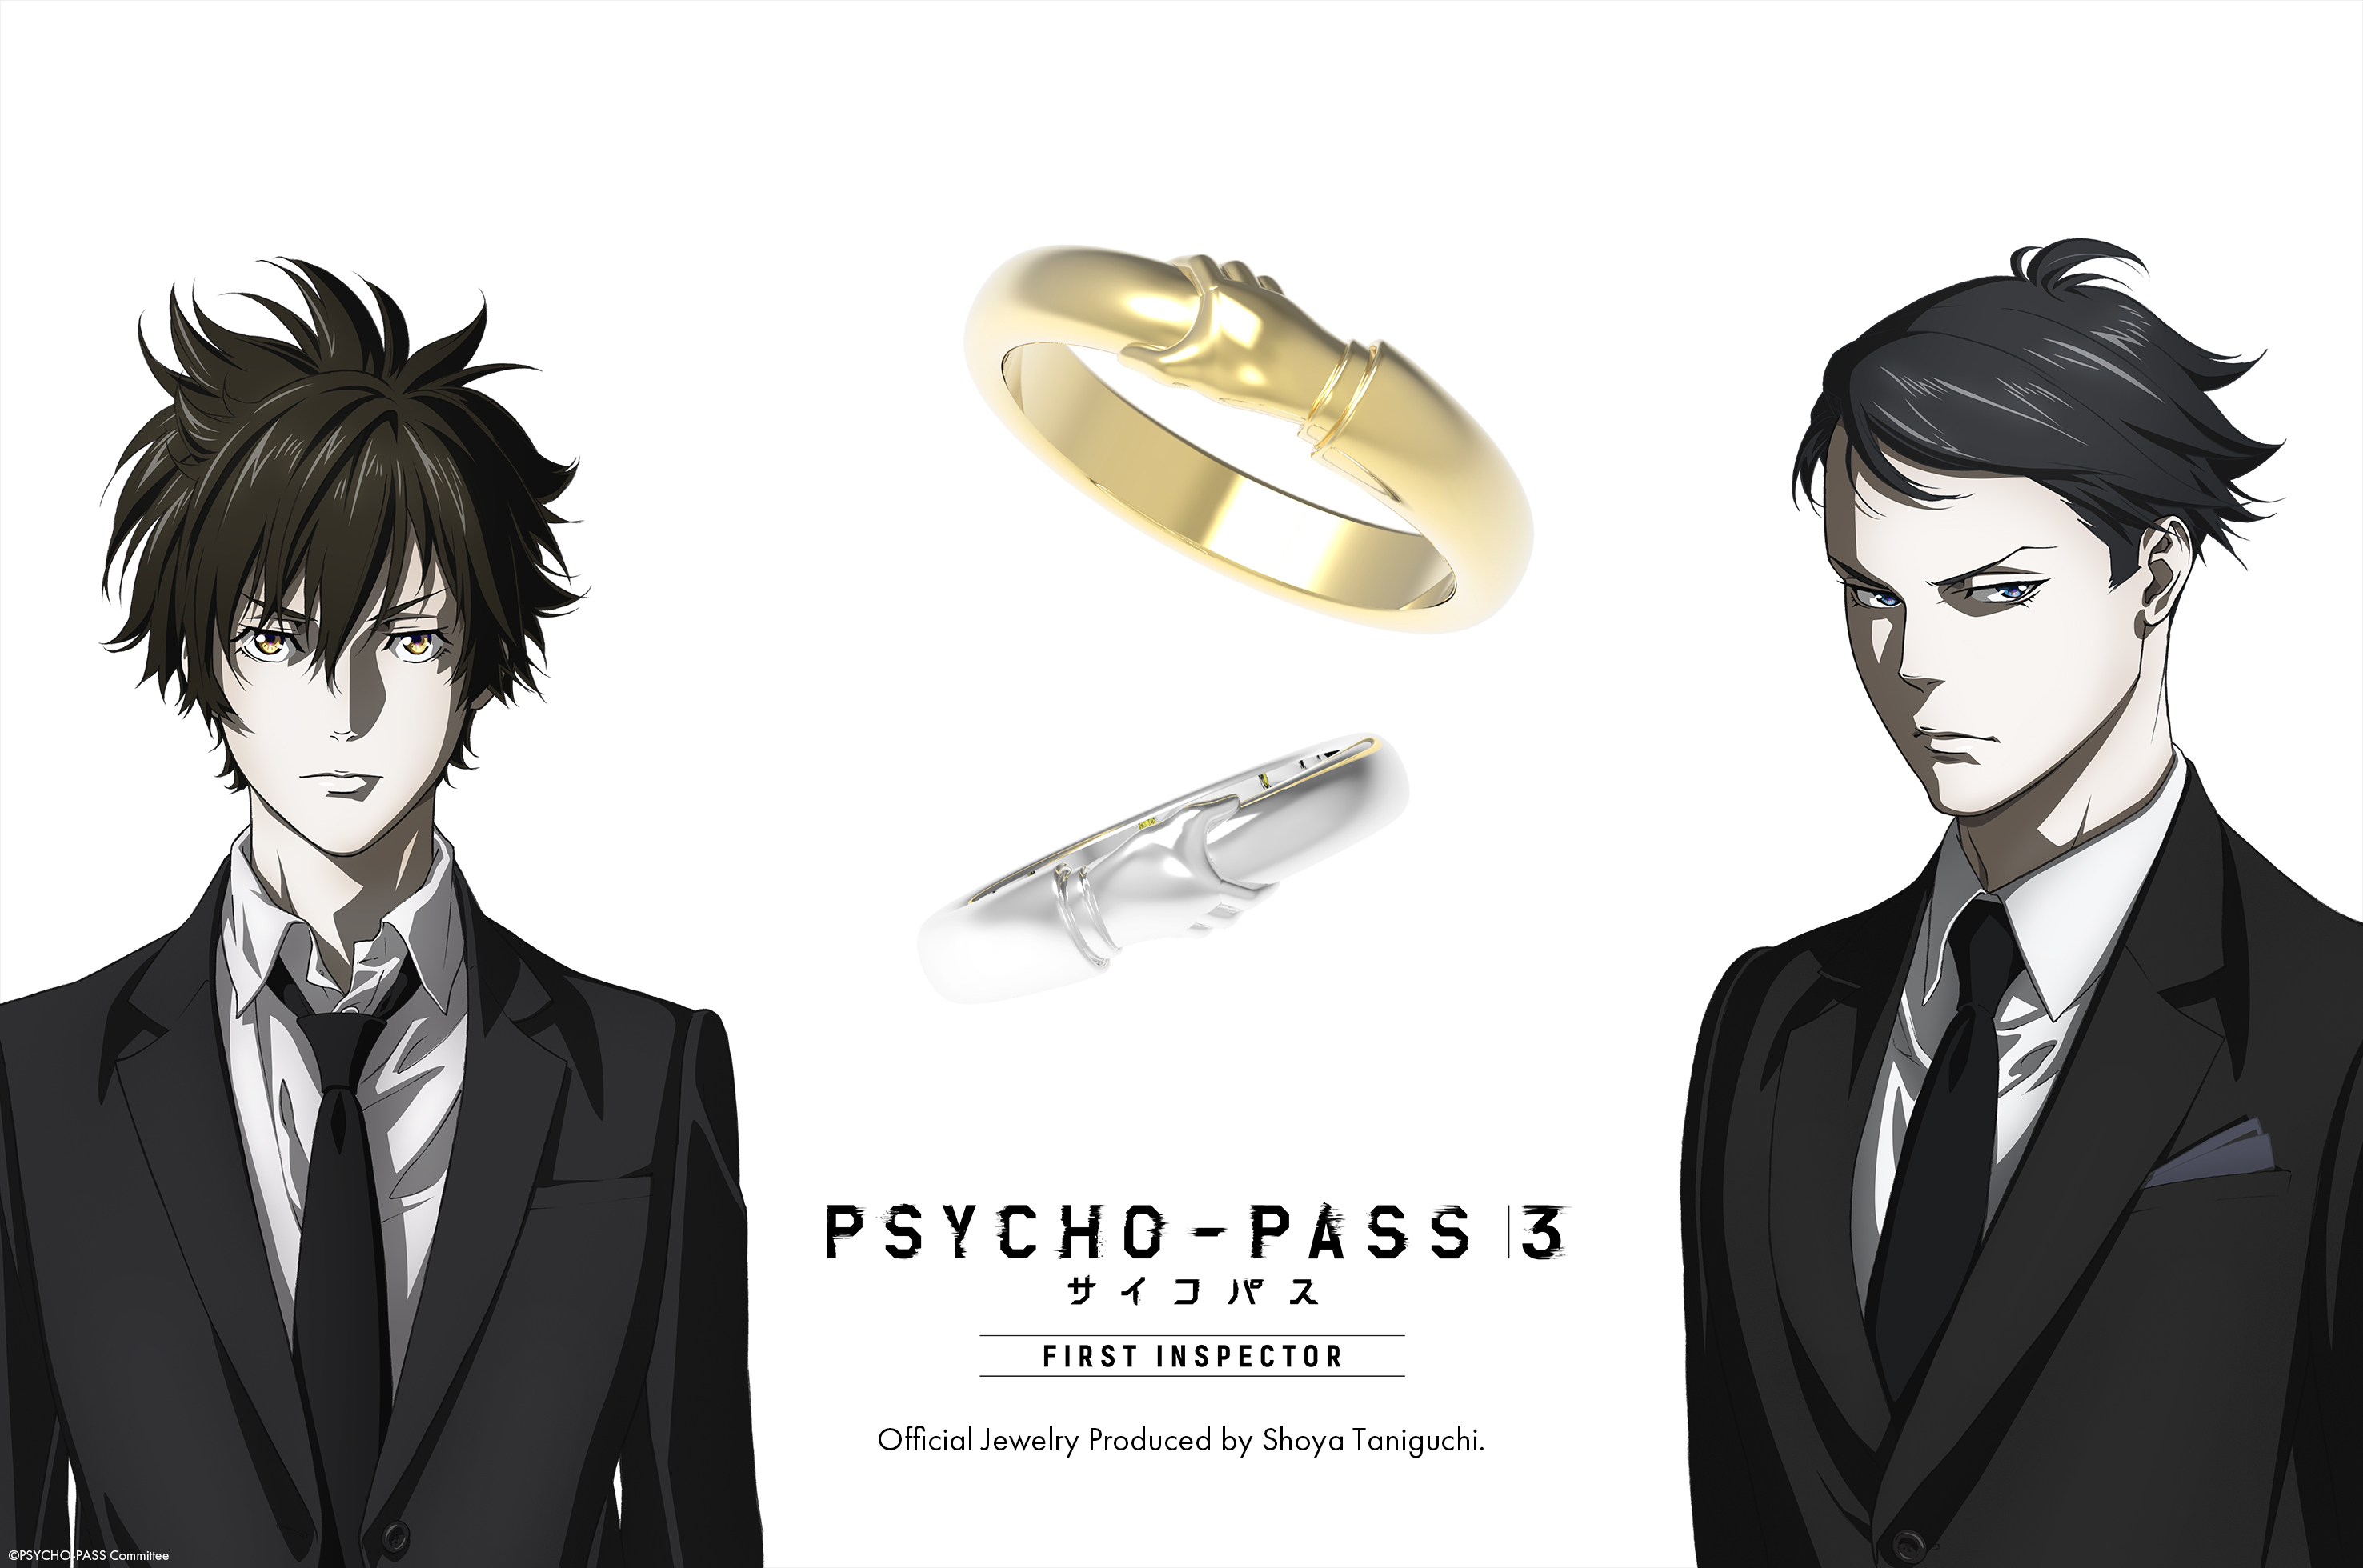 Psycho Pass サイコパス から 2人の絆を表す ザイルリング が登場 株式会社winryのプレスリリース